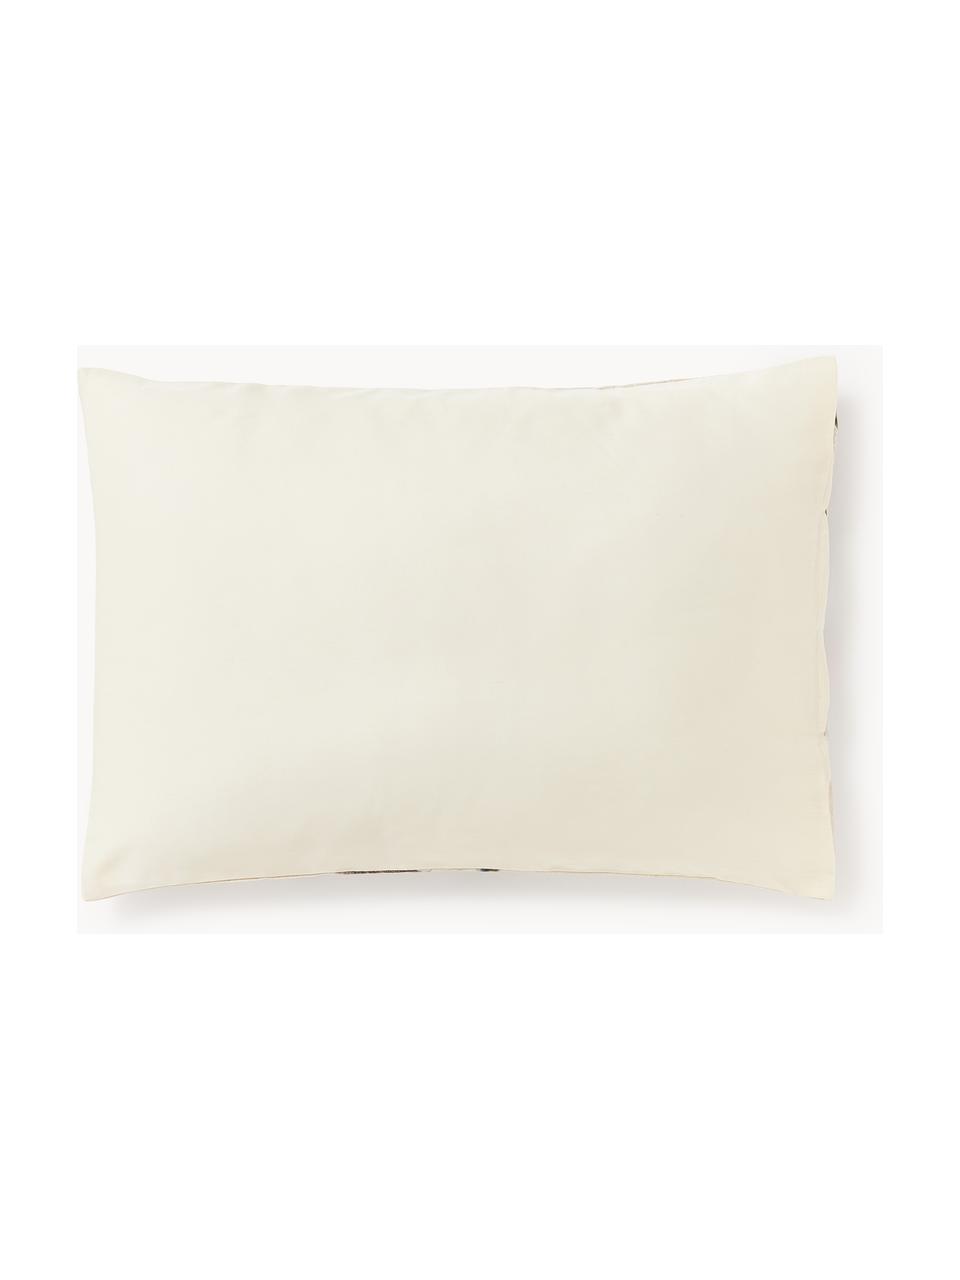 Funda de almohada de satén Flori, Beige claro, multicolor, An 45 x L 110 cm